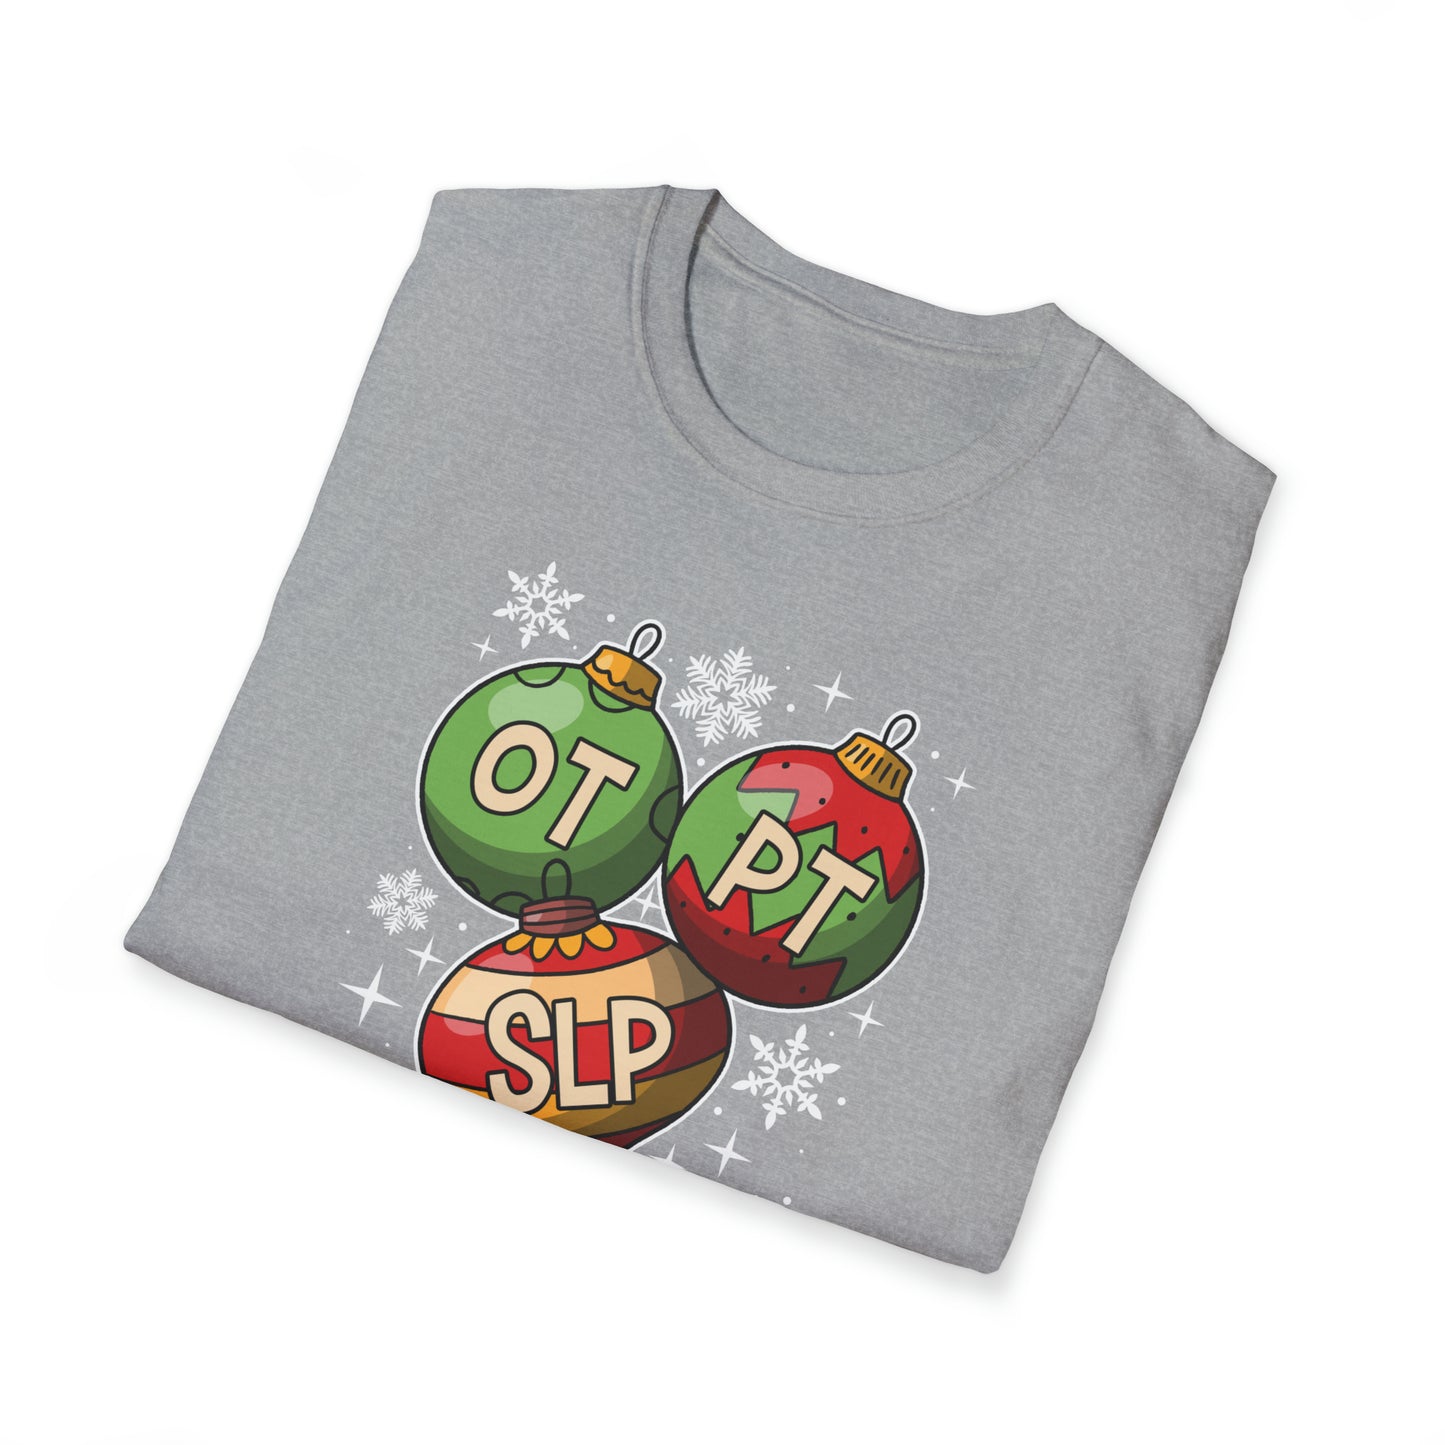 OT PT SLP Christmas Ornament Shirt